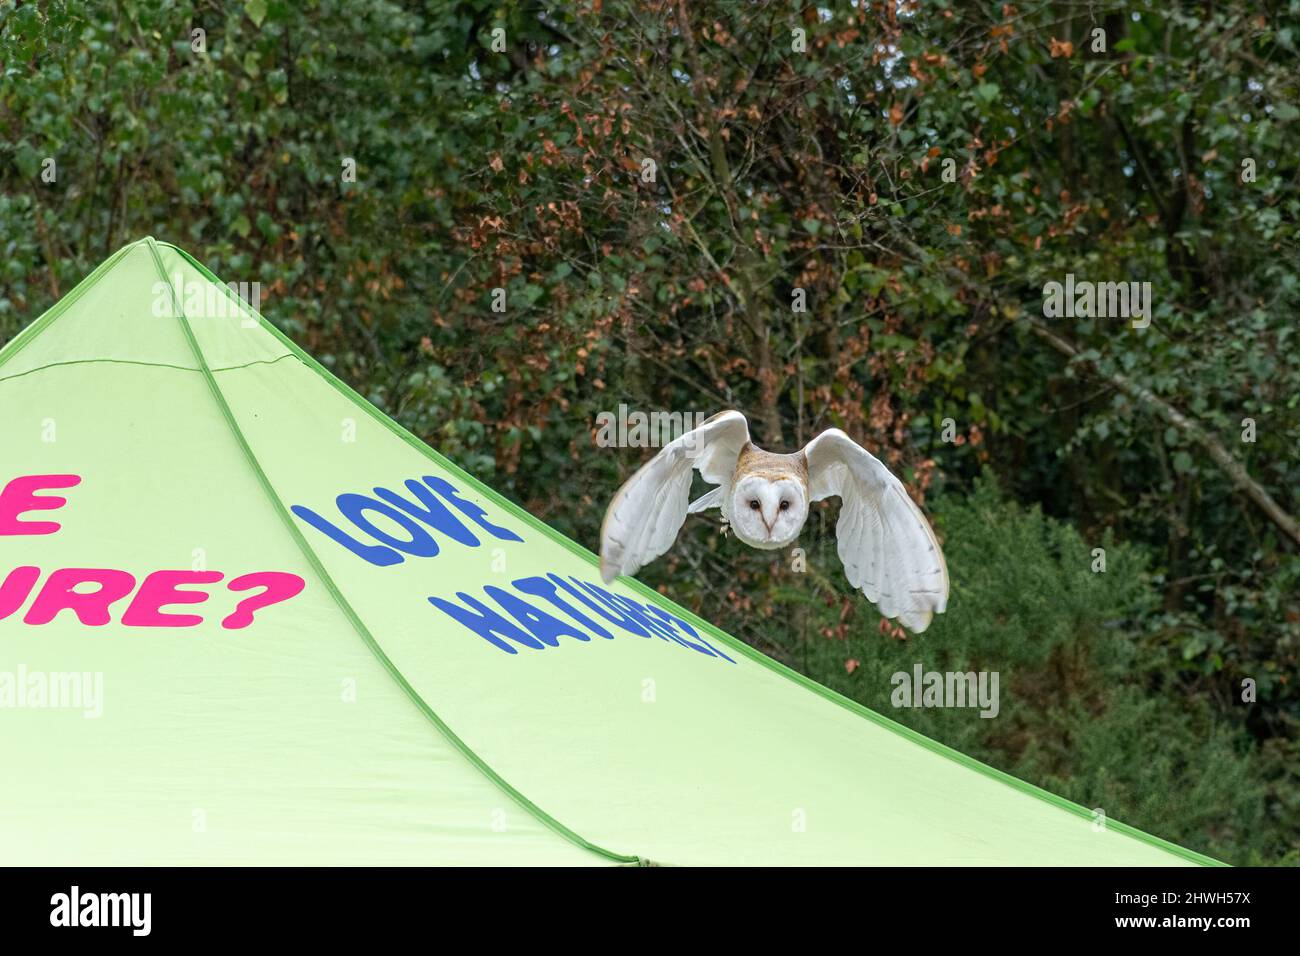 Fienile che vola sopra una tenda con Love Nature su di essa, in una mostra di paese, Regno Unito. Rapaci di preda dimostrazione di volo. Foto Stock